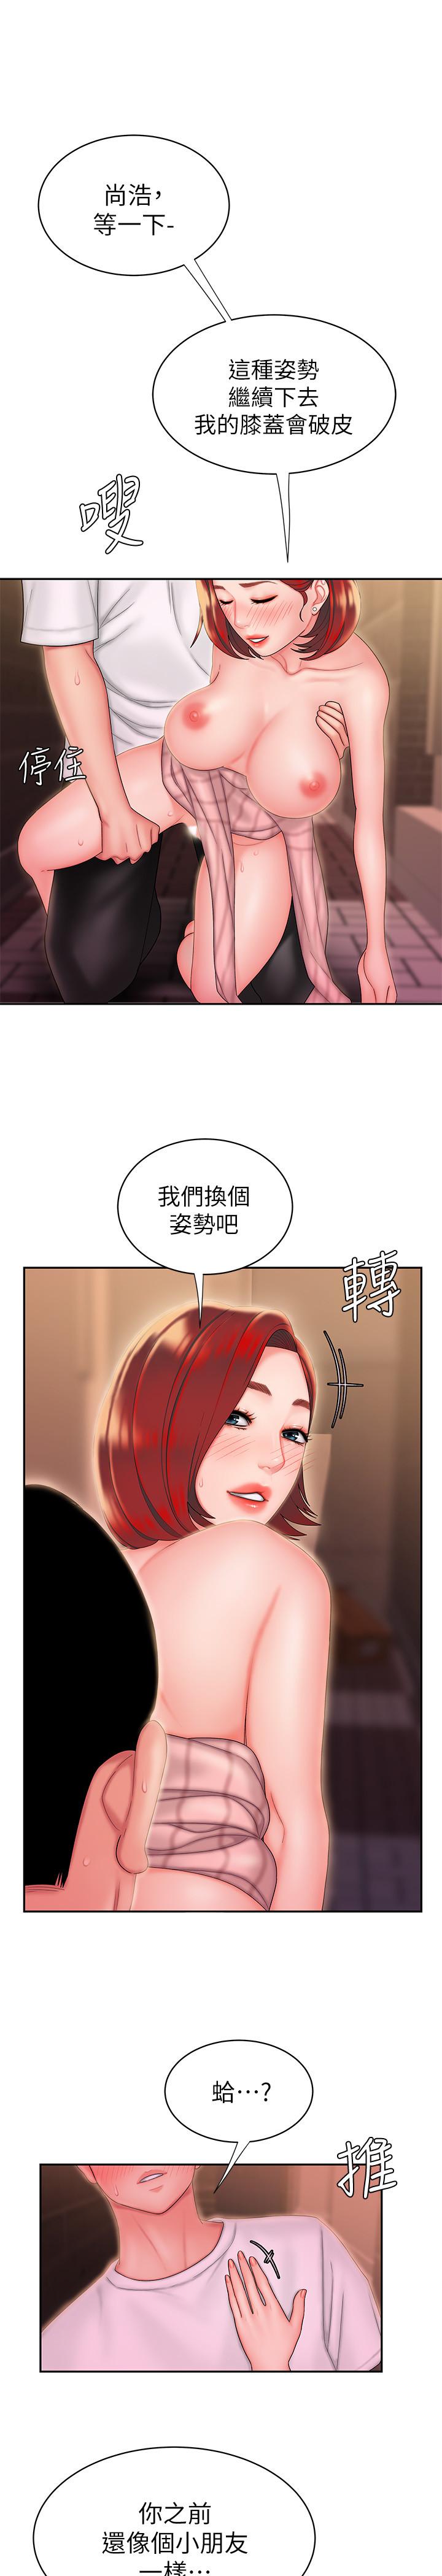 韩国污漫画 幸福外送員 第23话-把舌头深深钻进老板娘体内 21